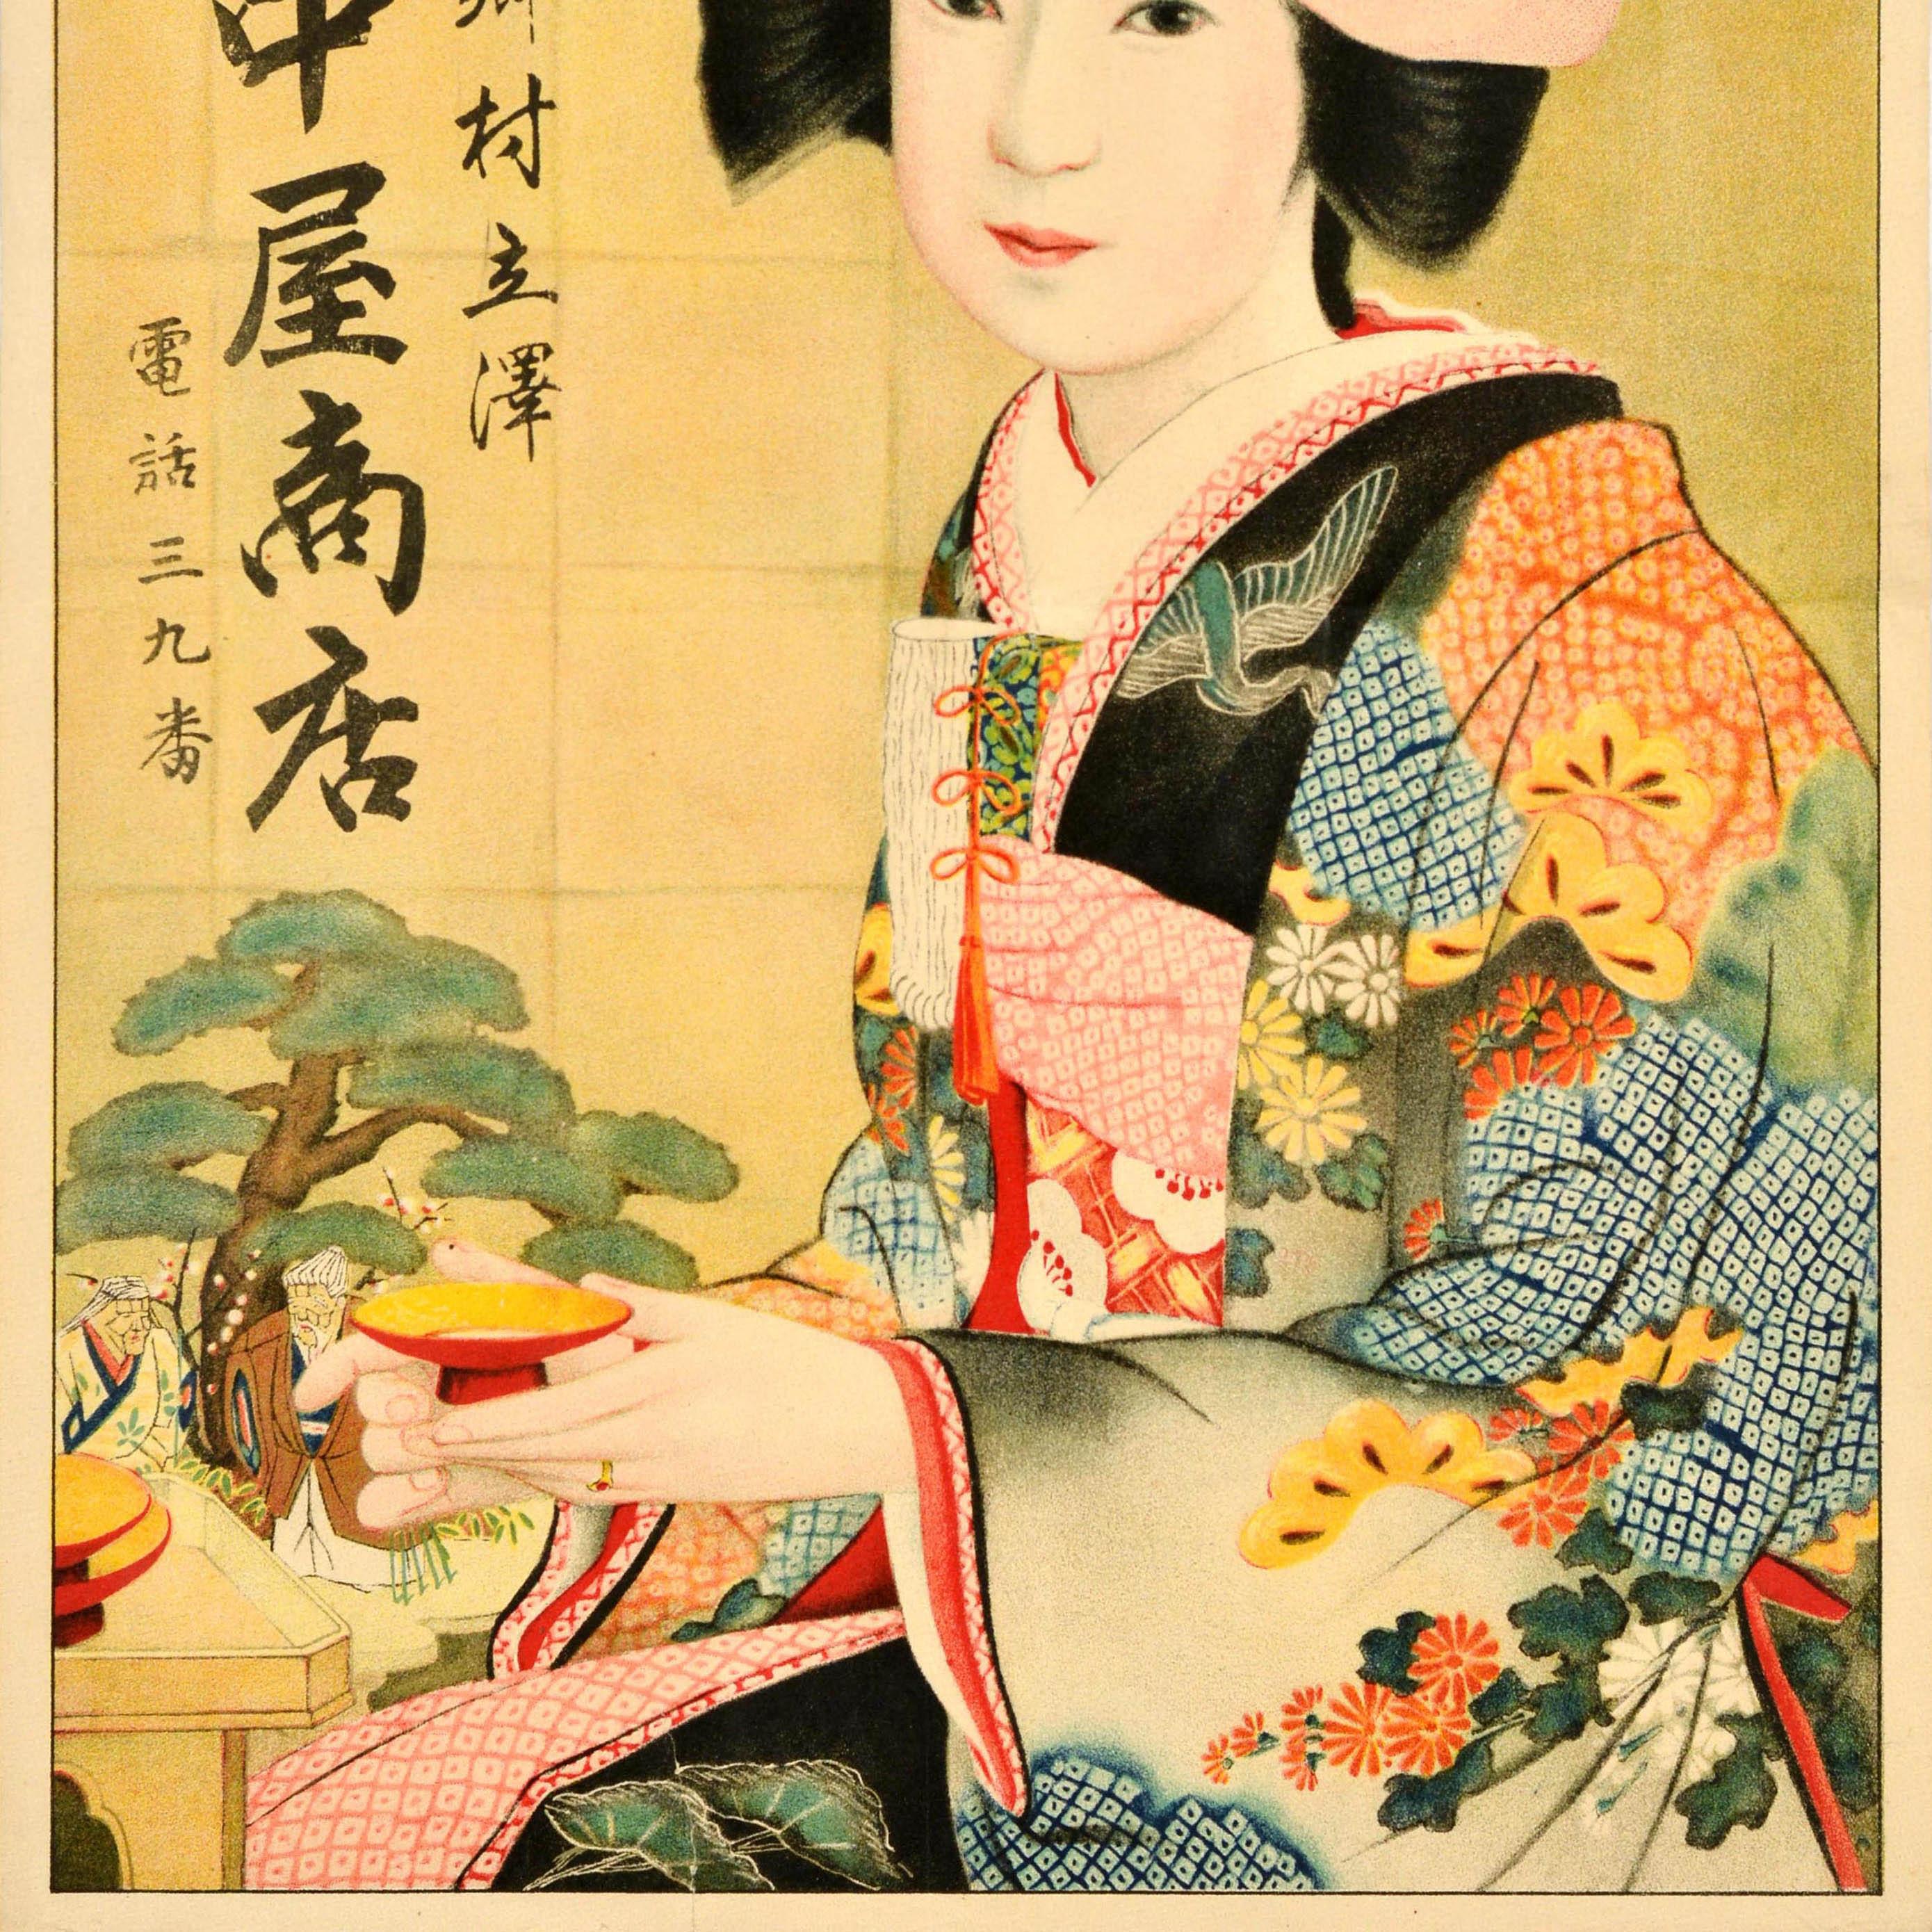 Original Vintage Advertising Poster Hongo Village Tachisawa Kanakaya Store Japan In Fair Condition For Sale In London, GB